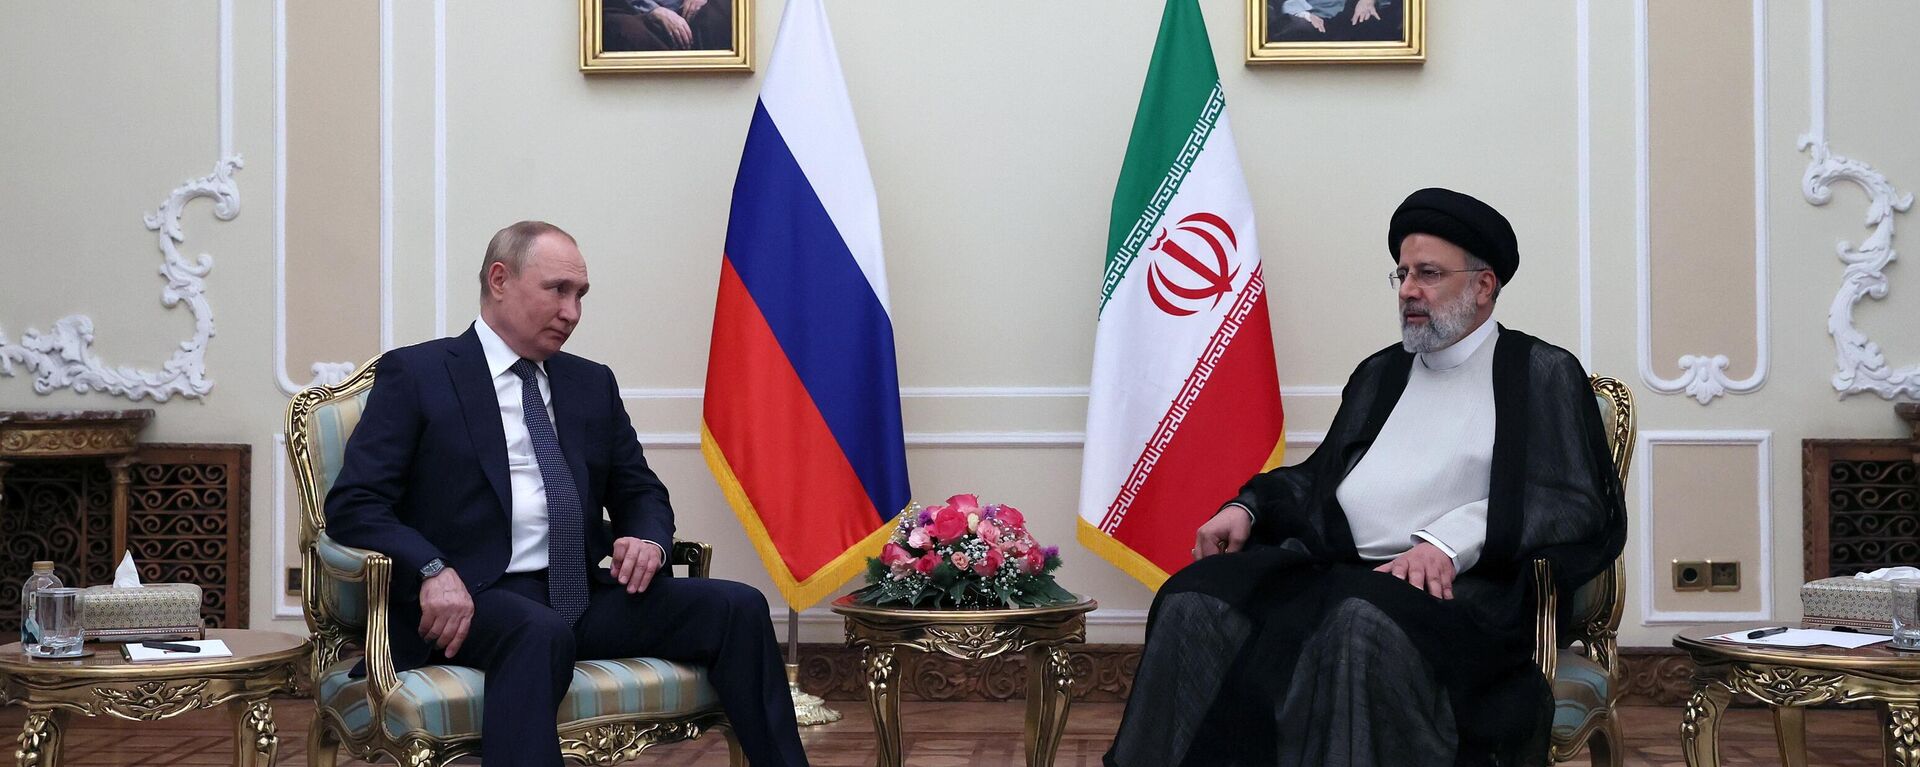 Vizita de lucru a lui Vladimir Putin în Iran, 19 iulie 2022 - Sputnik Moldova, 1920, 19.07.2022